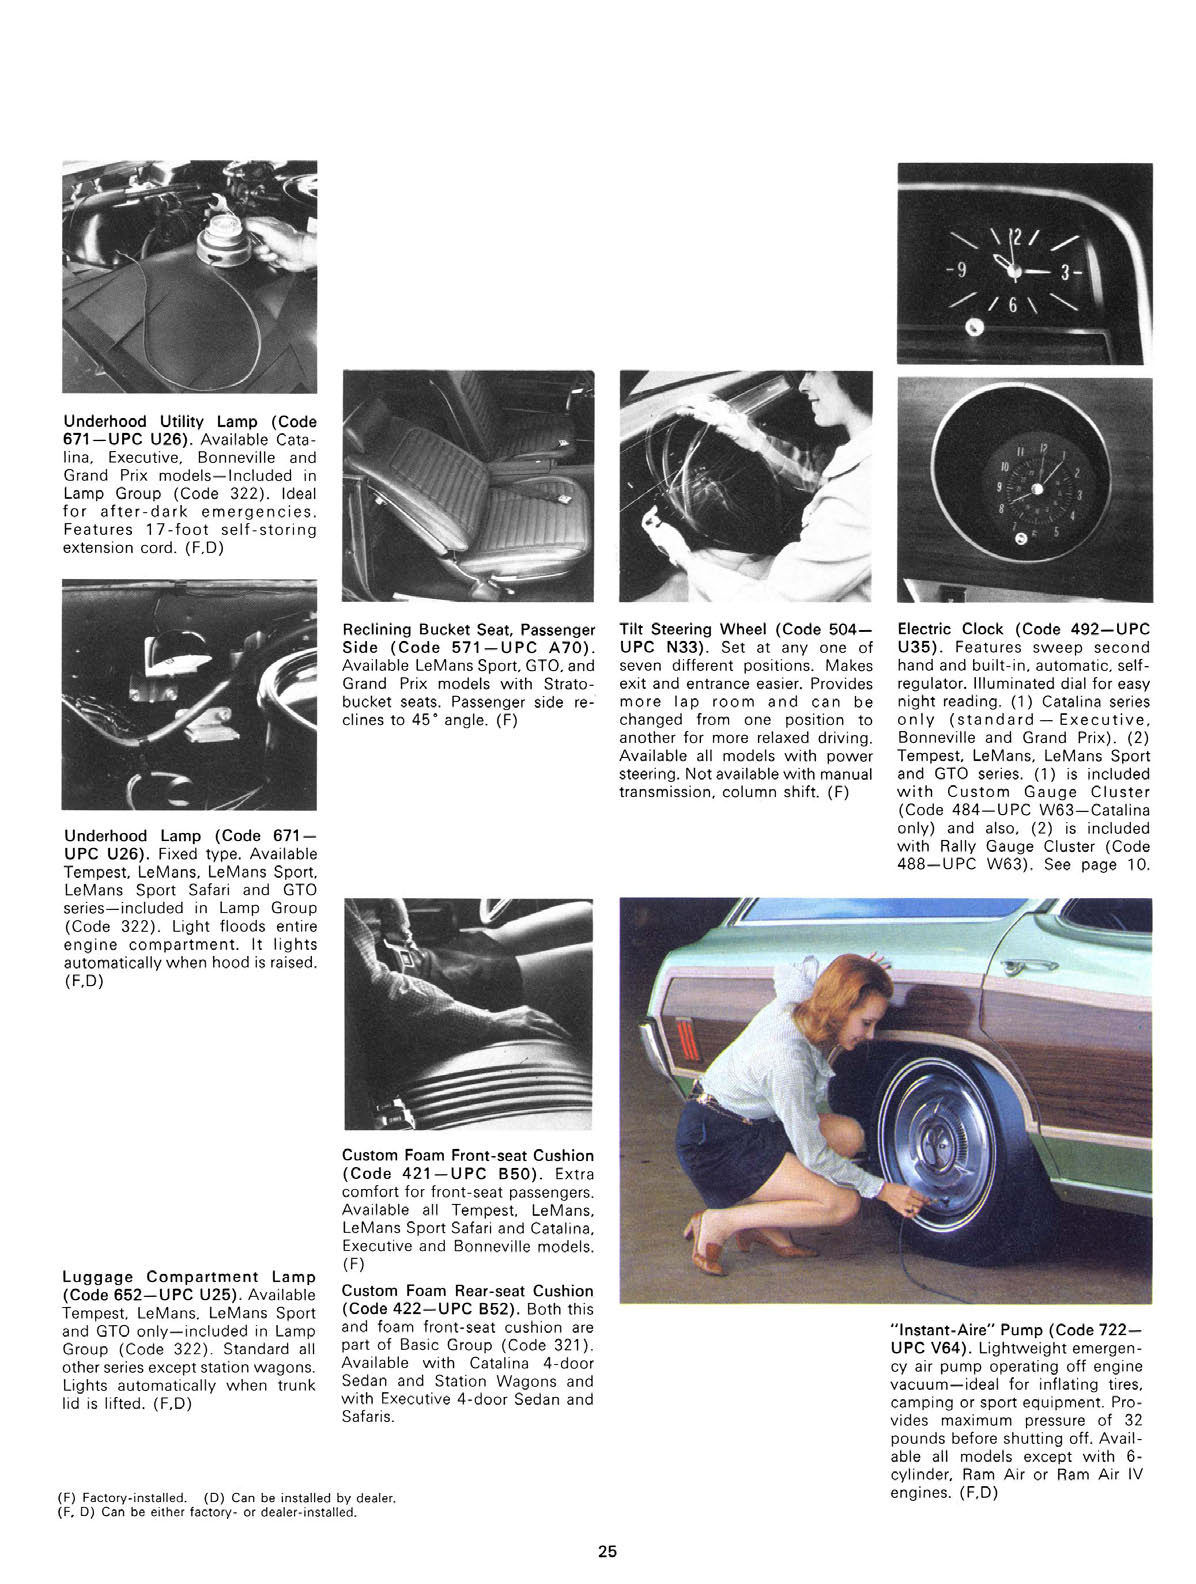 n_1970 Pontiac Accessories-25.jpg